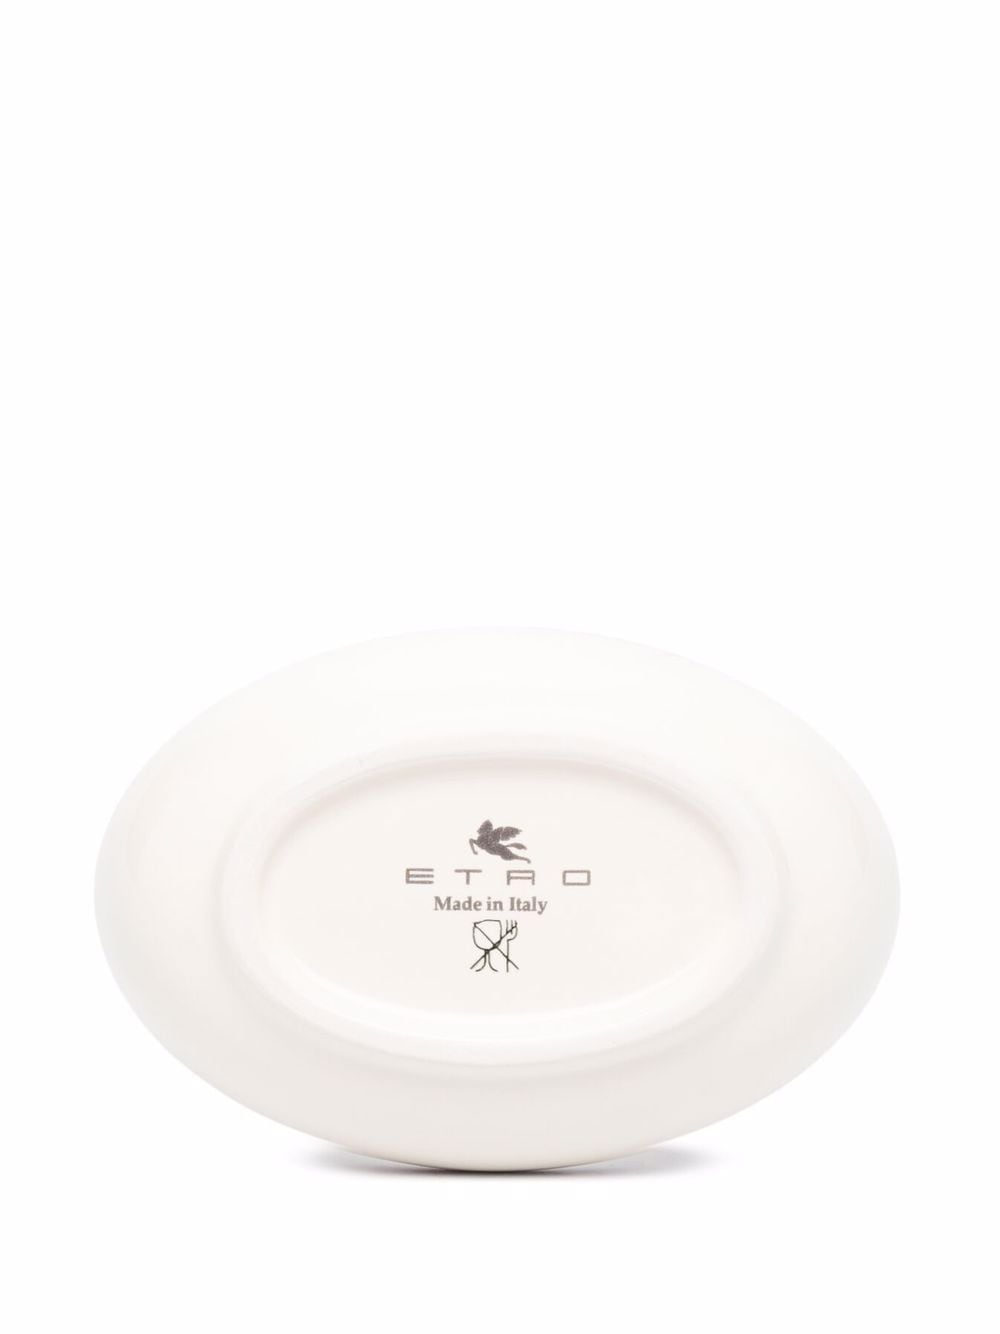 фото Etro home глубокая тарелка с ручной росписью